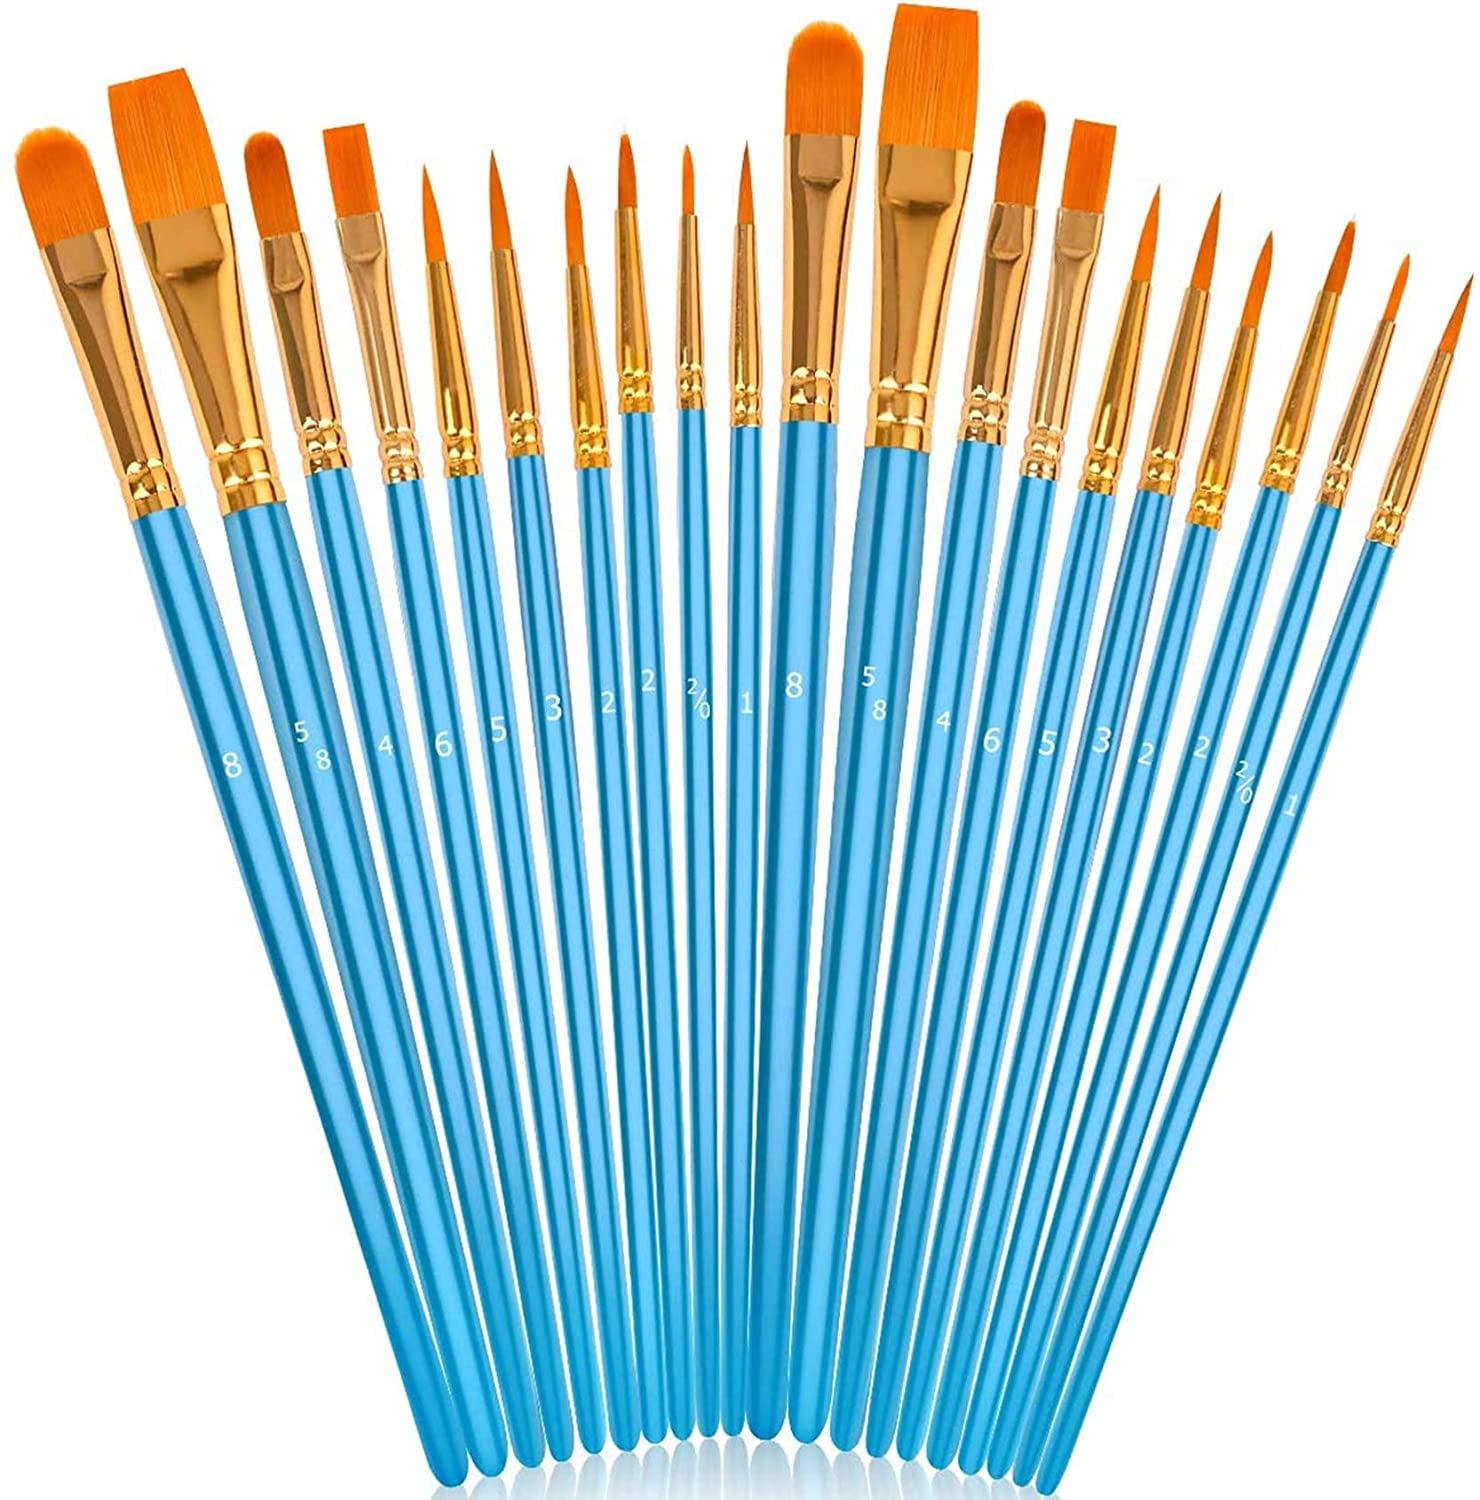 20 PCS Paint Brush Set, Acrylic Art Paintbrush Sets, Round